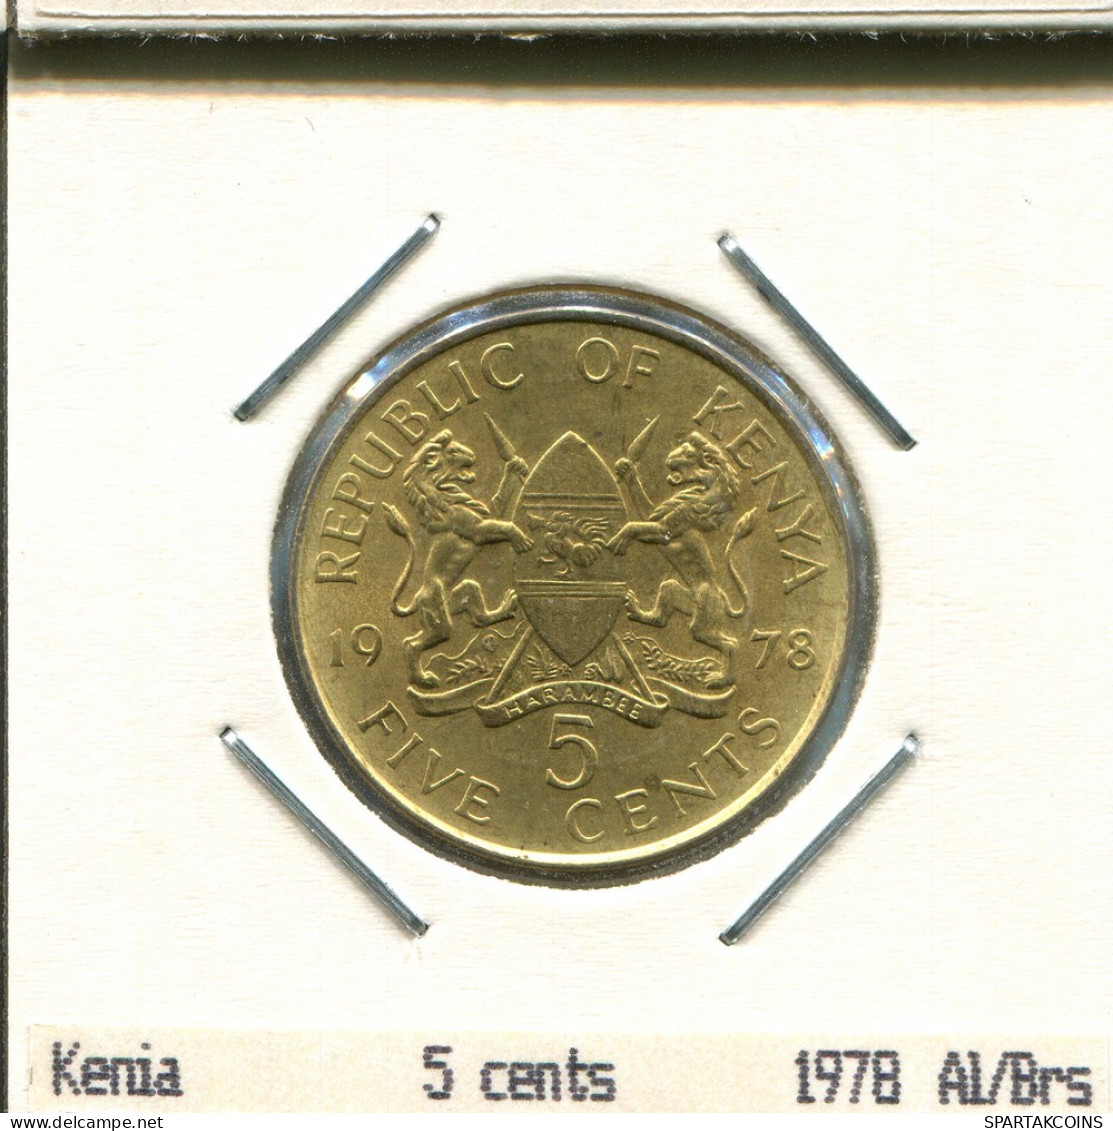 5 CENTS 1978 KENIA KENYA Münze #AS330.D - Kenya